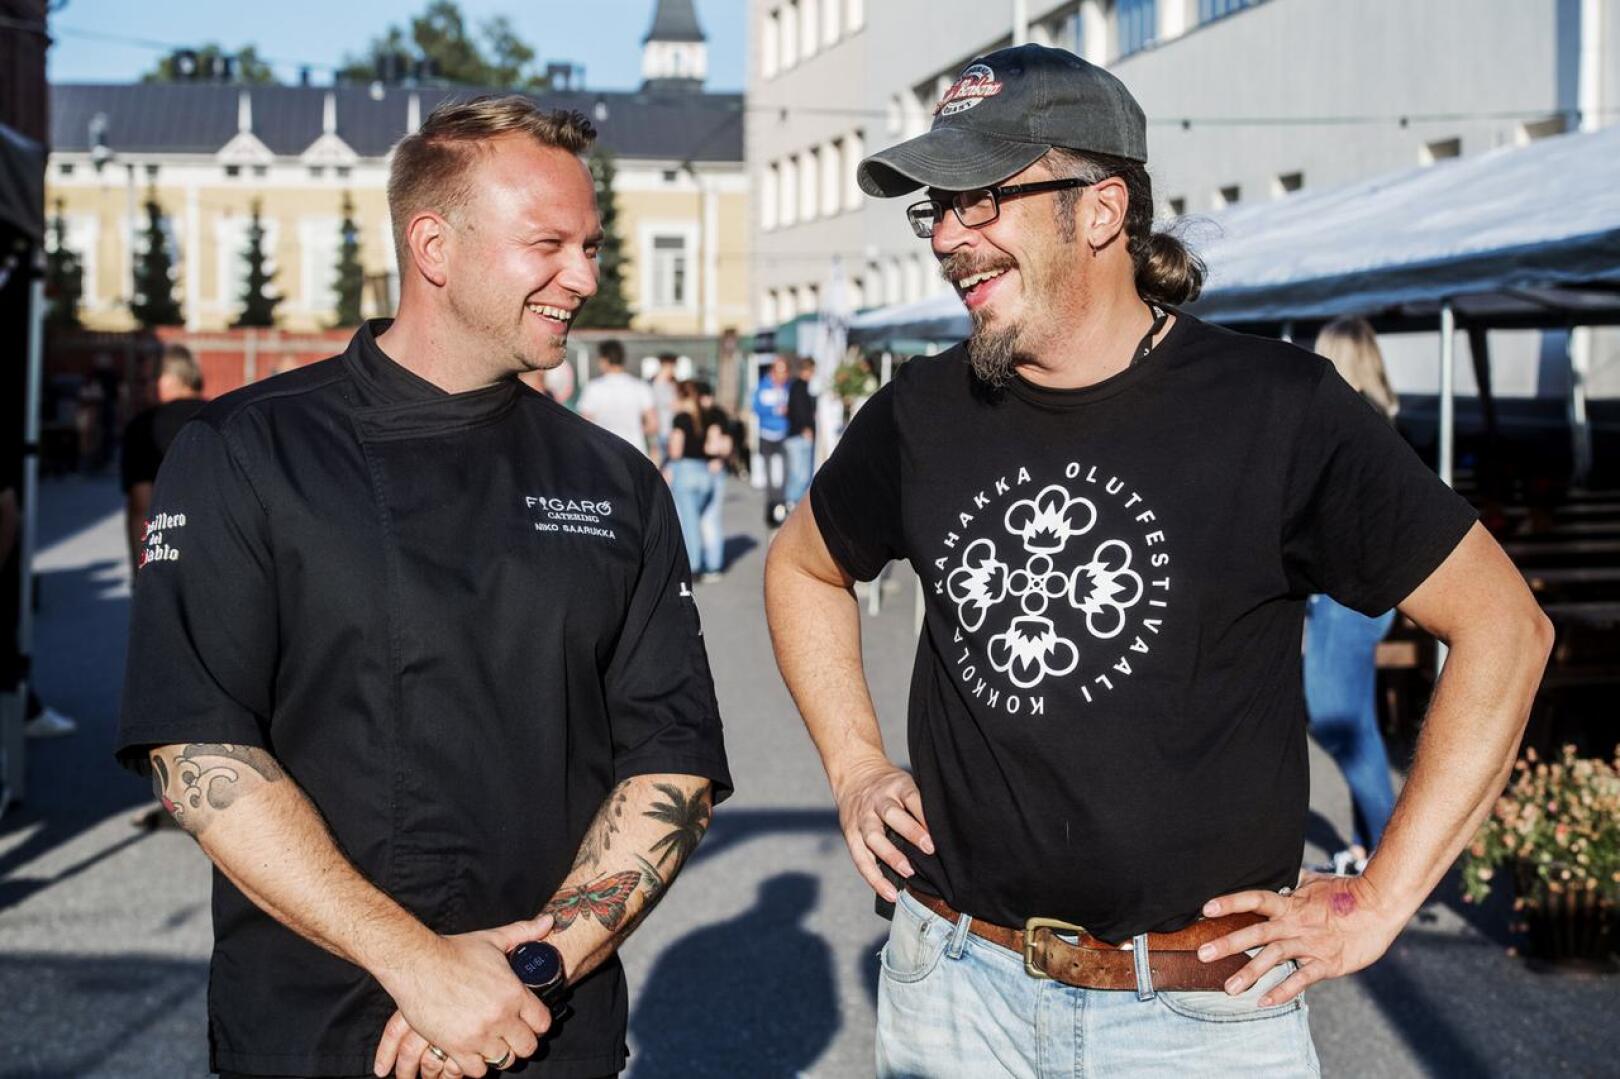 (arkistokuva) Kesällä  2019 Niko Saarukka ja Robban Hagnäs iloitsivat Kahakka Olutfestivaaleilla. 